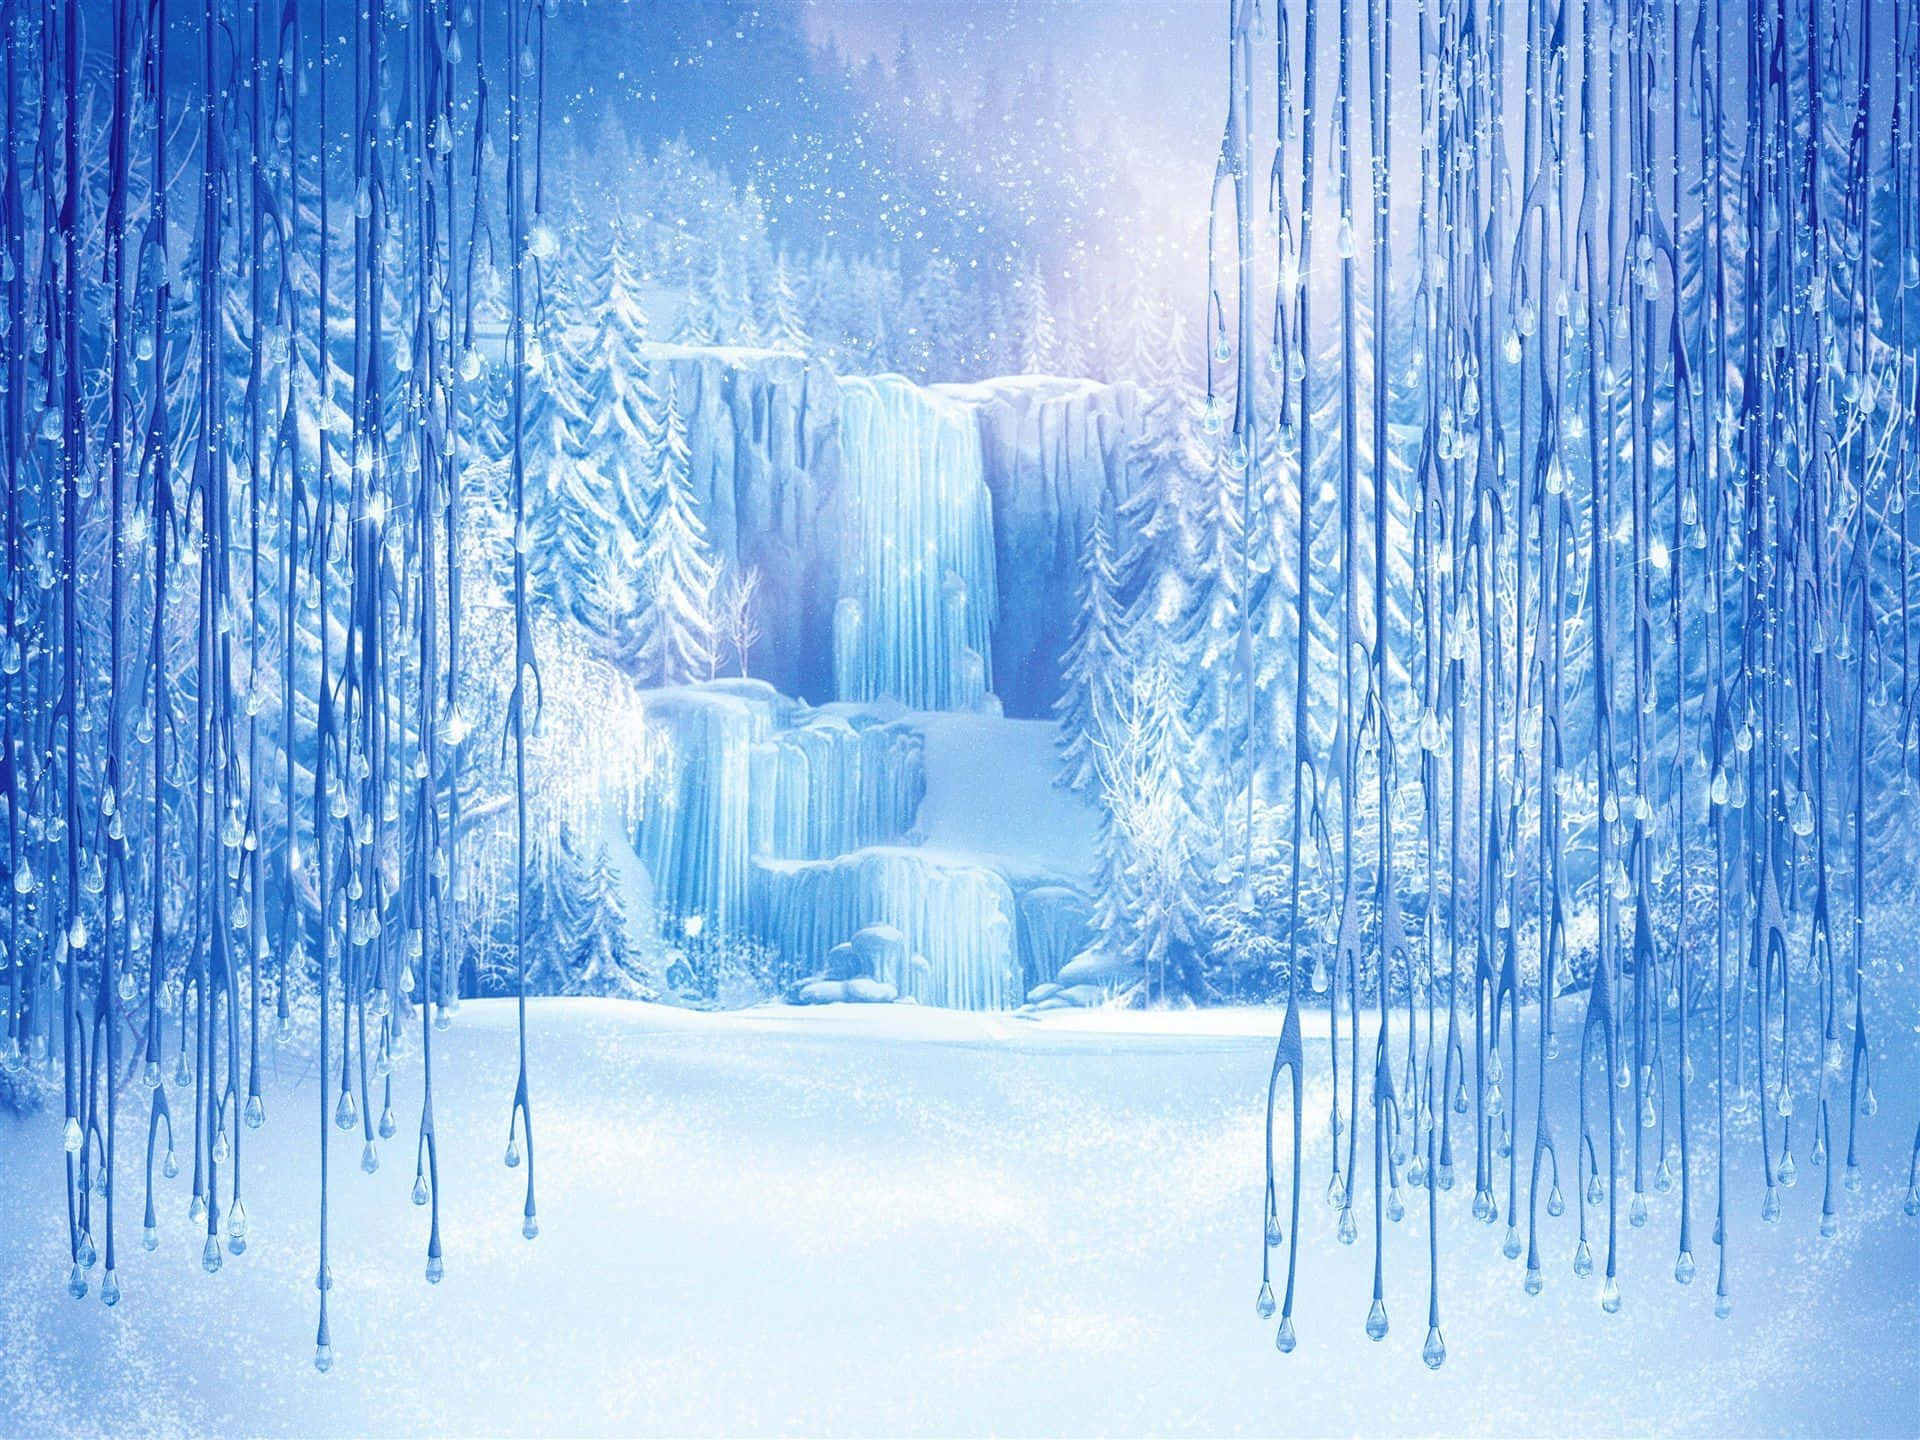 Majestic Frozen Castle in a Winter Wonderland